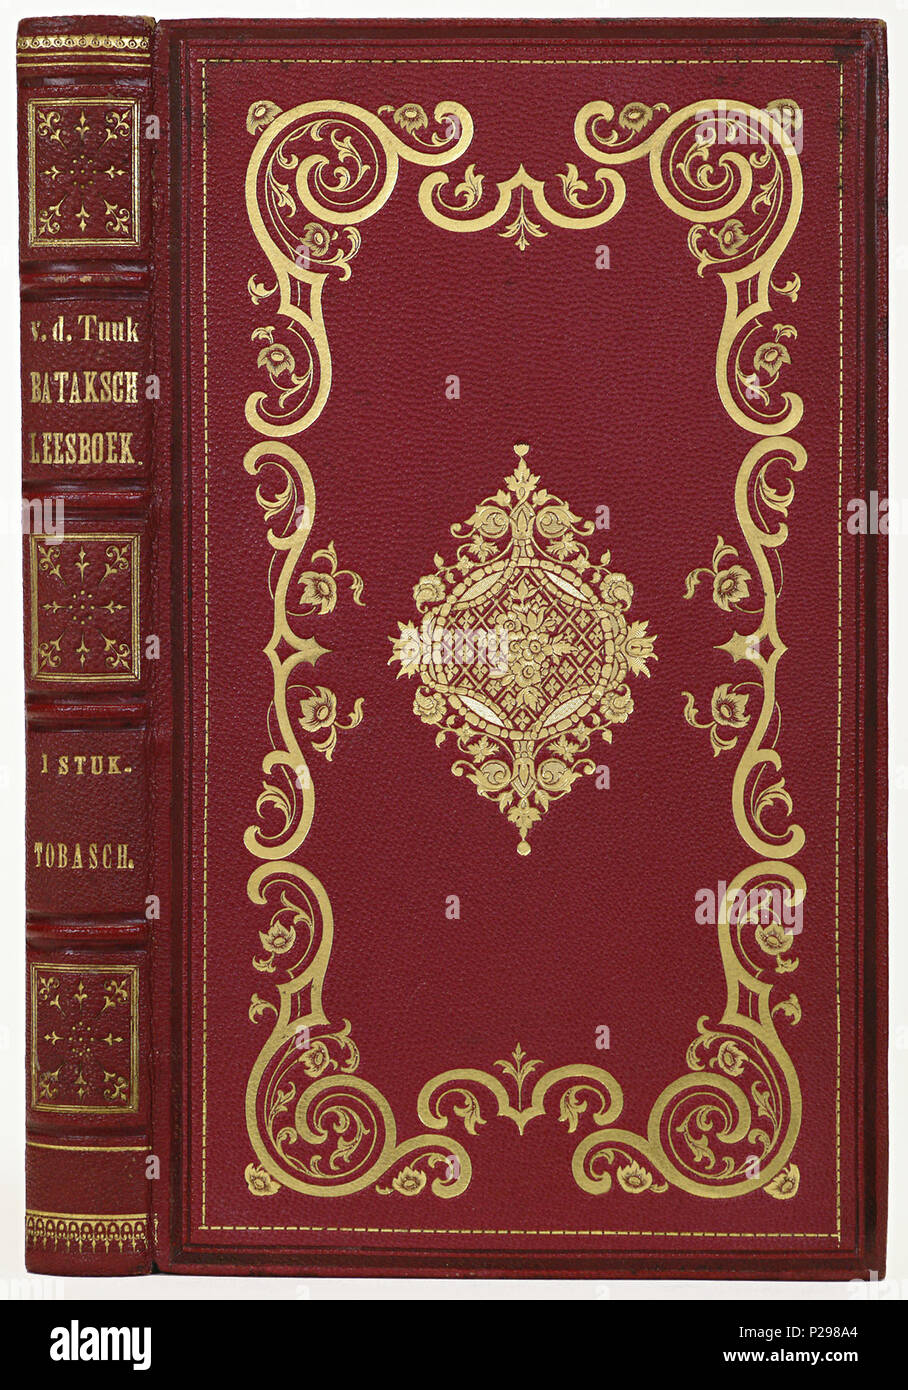 . Band van rood segrijn .  Nederlands: Inhoud: H.N. van der Tuuk. Bataksch leesboek ... Amsterdam, 1860. . 1863; 29 Band van rood segrijn-KONB12-651H9 Stock Photo